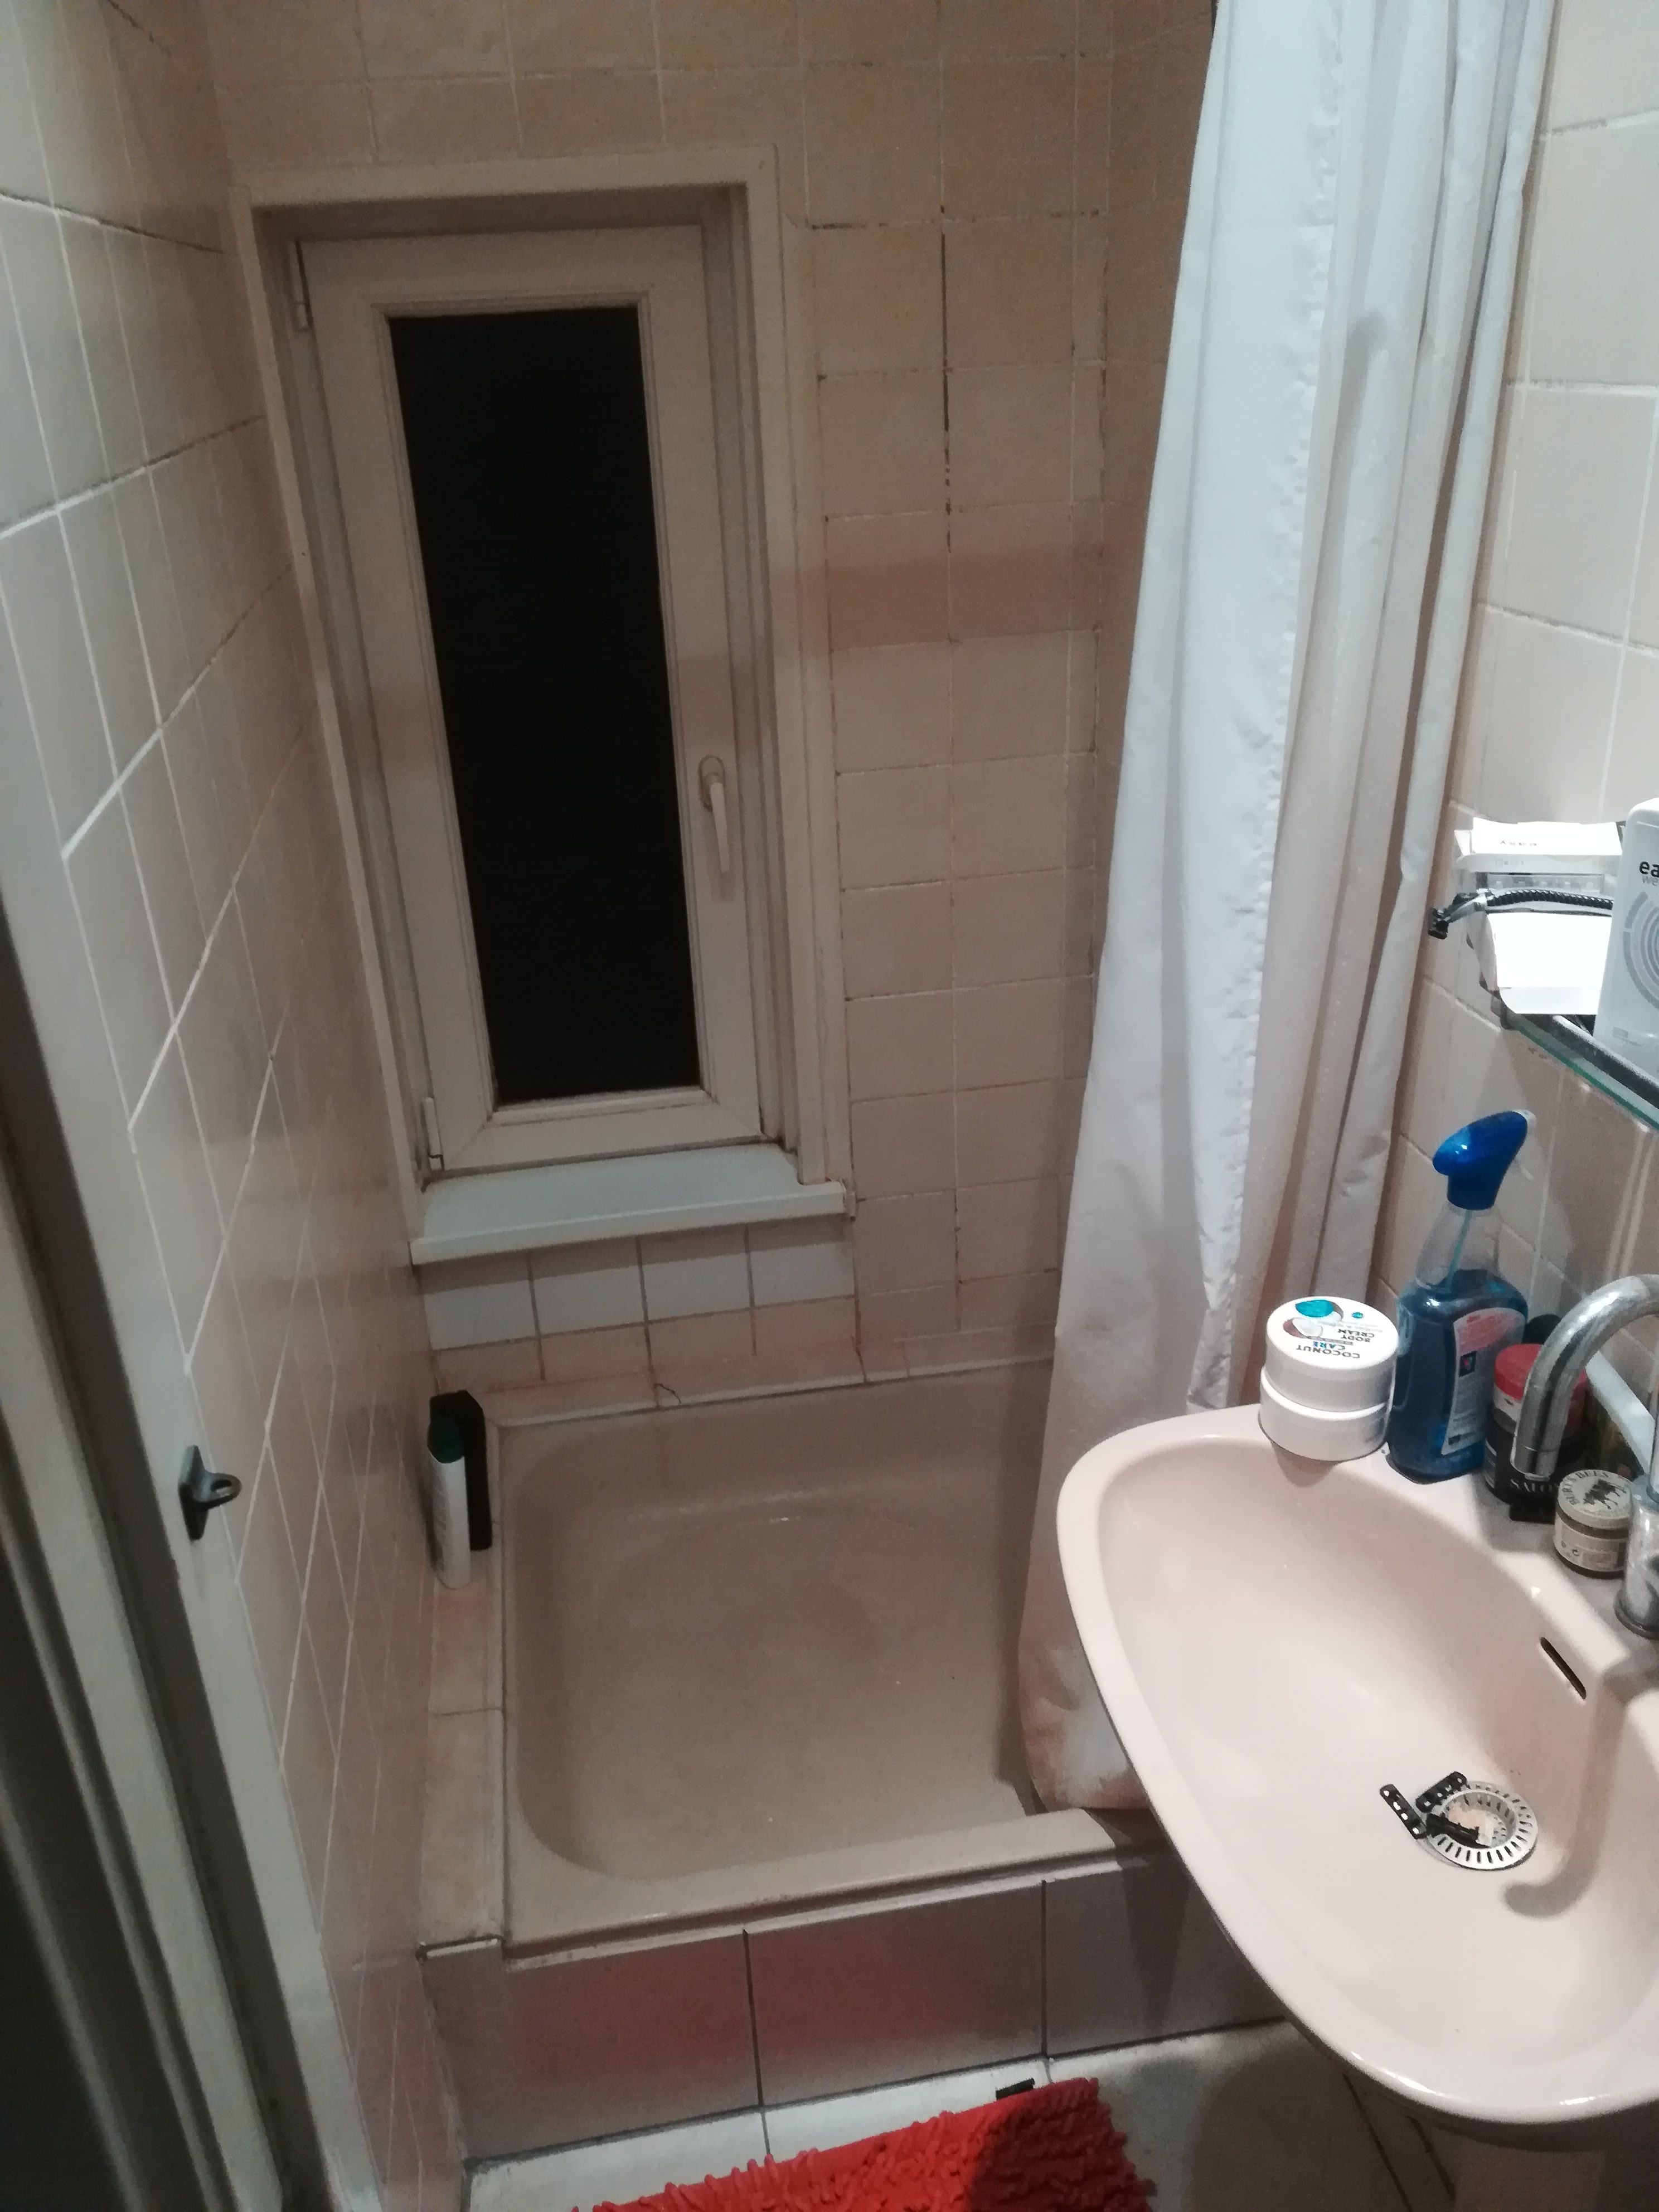 Hoe Creëer Je Een Prachtige Badkamer Van 1 Bij 2 Meter?